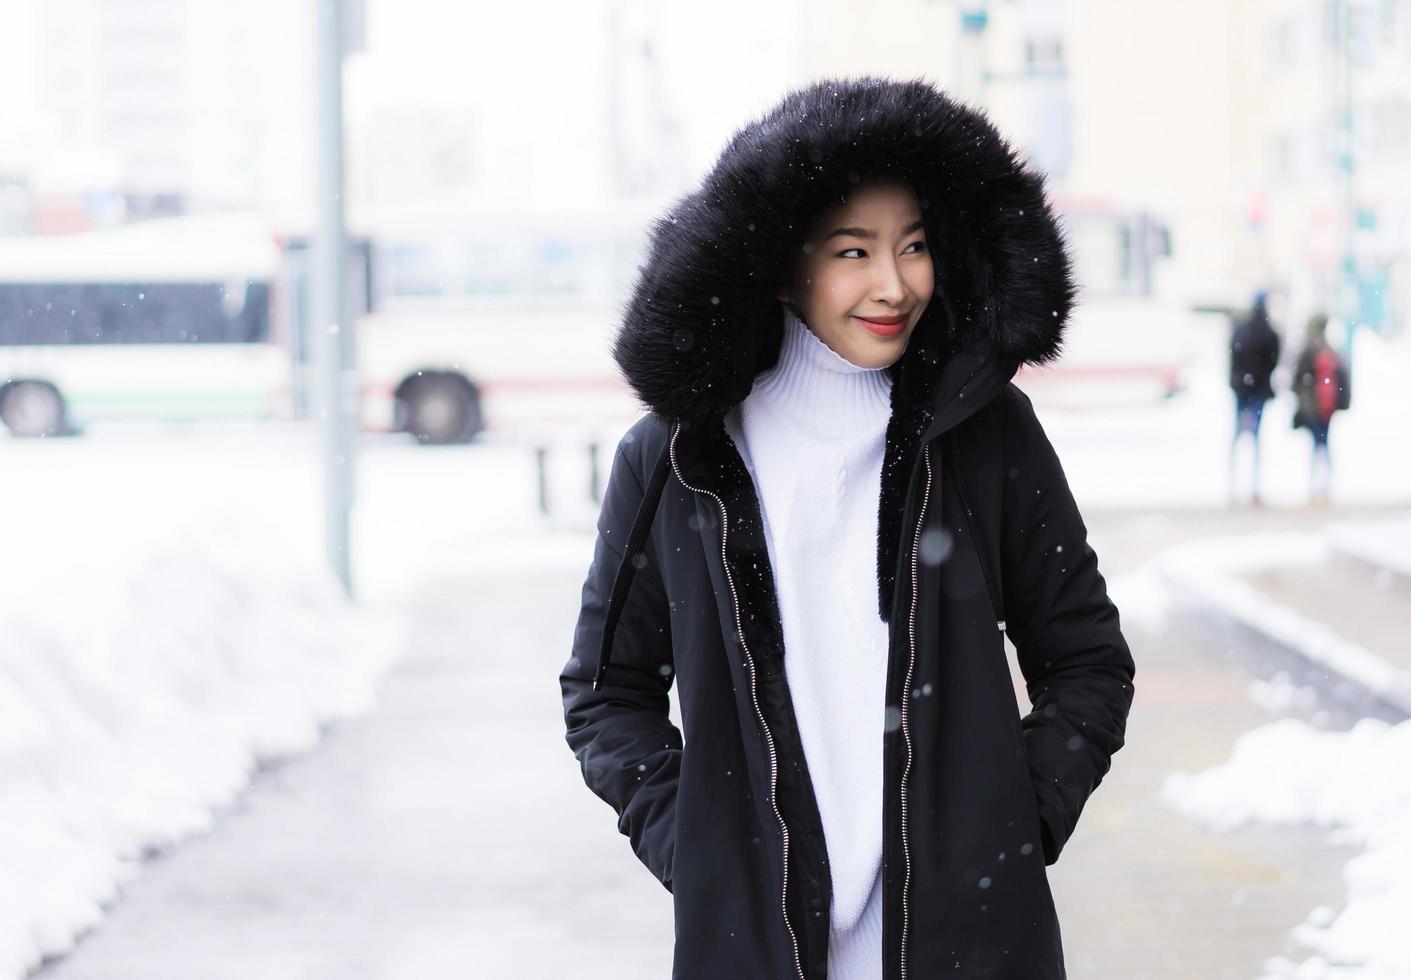 mooie jonge aziatische vrouw die lacht gelukkig voor reizen in sneeuw winterseizoen foto